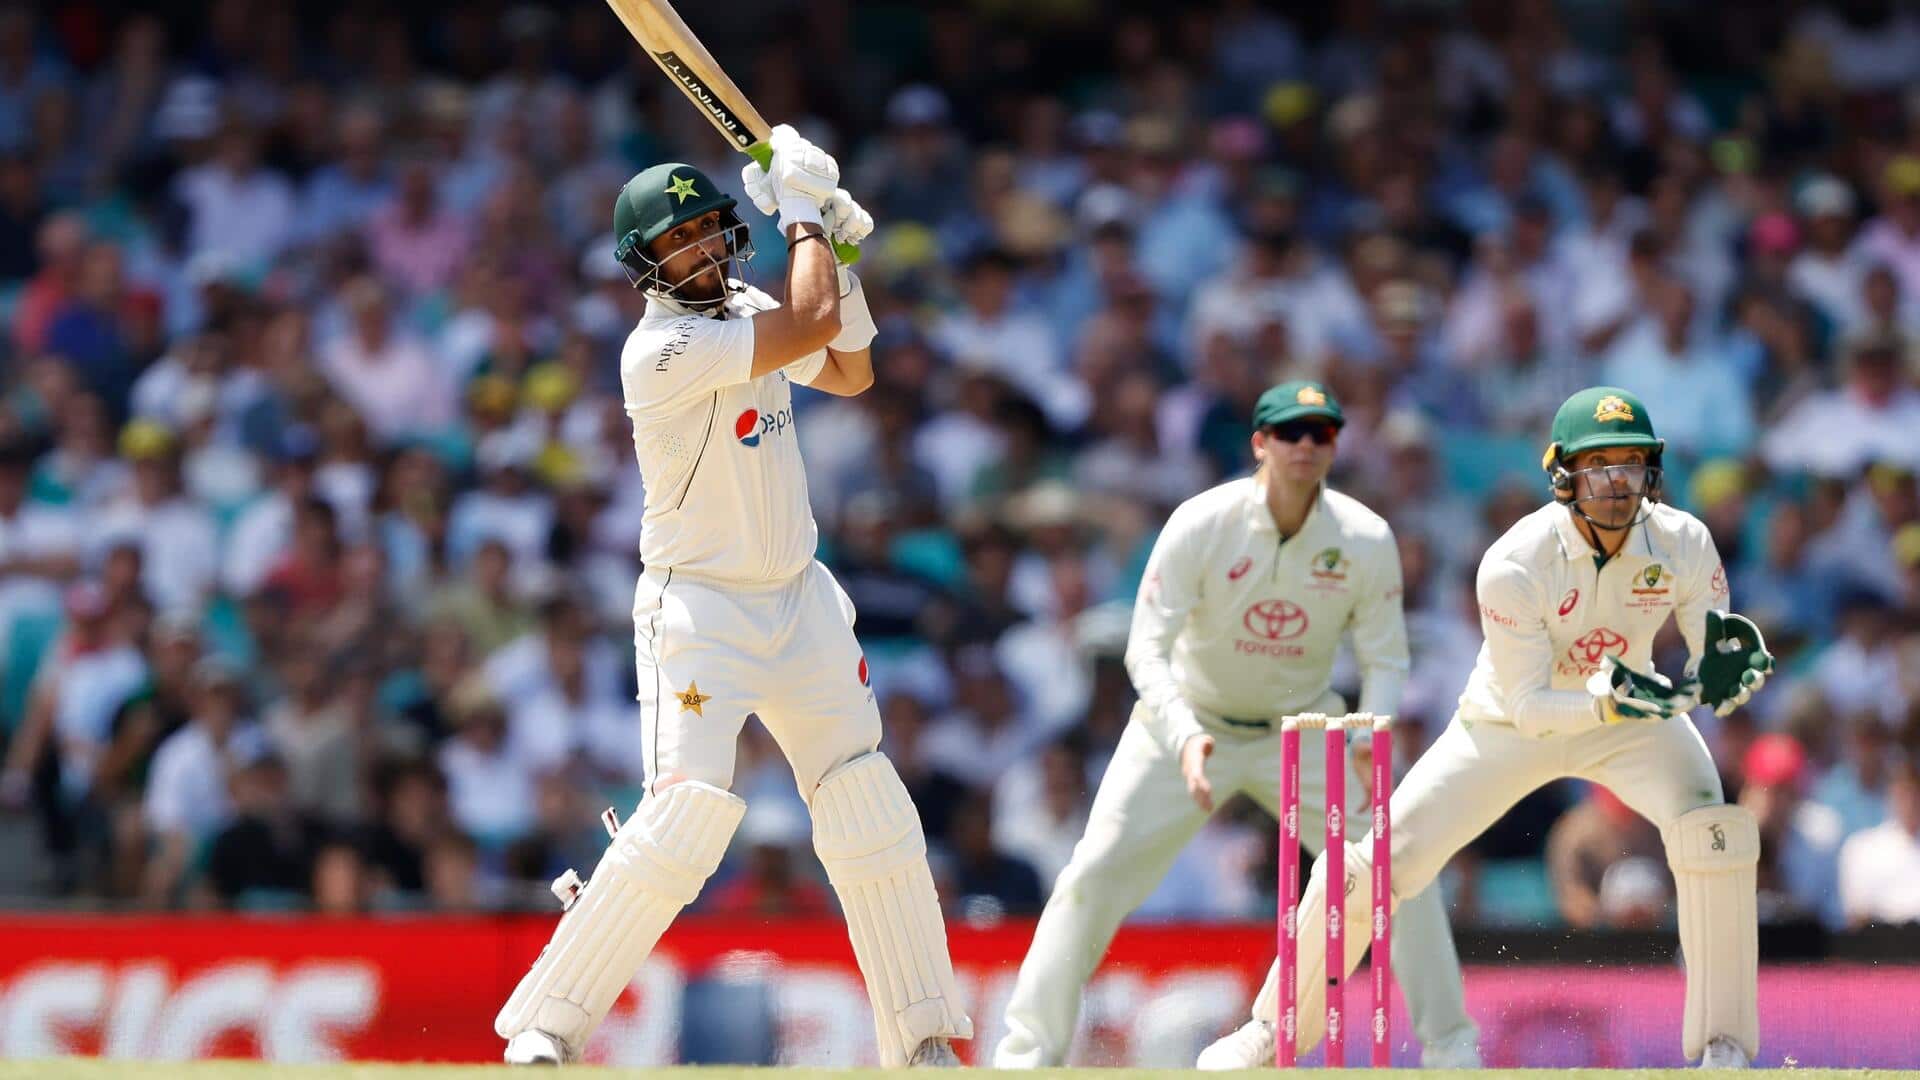 ऑस्ट्रेलिया बनाम पाकिस्तान: आघा सलमान ने लगाया टेस्ट करियर का छठा अर्धशतक, जानिए उनके आंकड़े